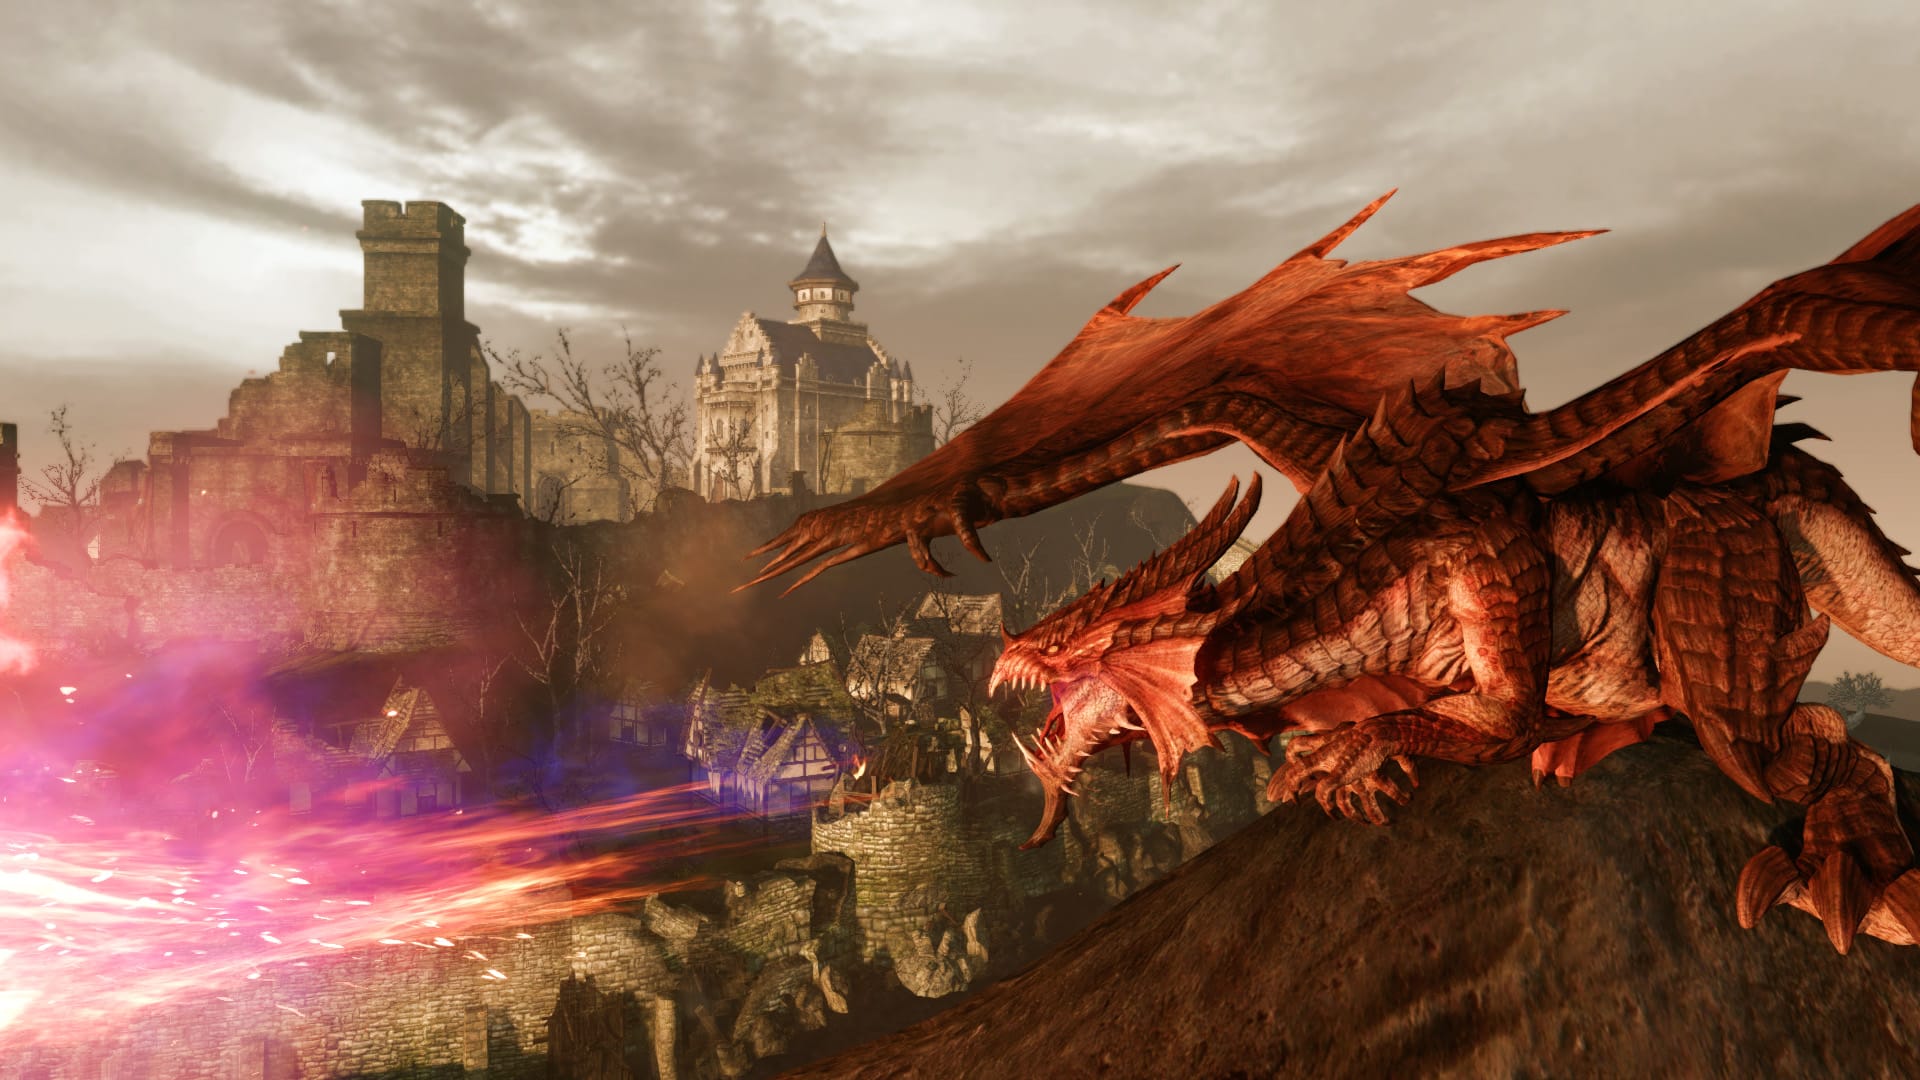 بهترین بازی های MMORPG: ArceHage. تصویر یک اژدها را در نزدیکی یک شهر نشان می دهد